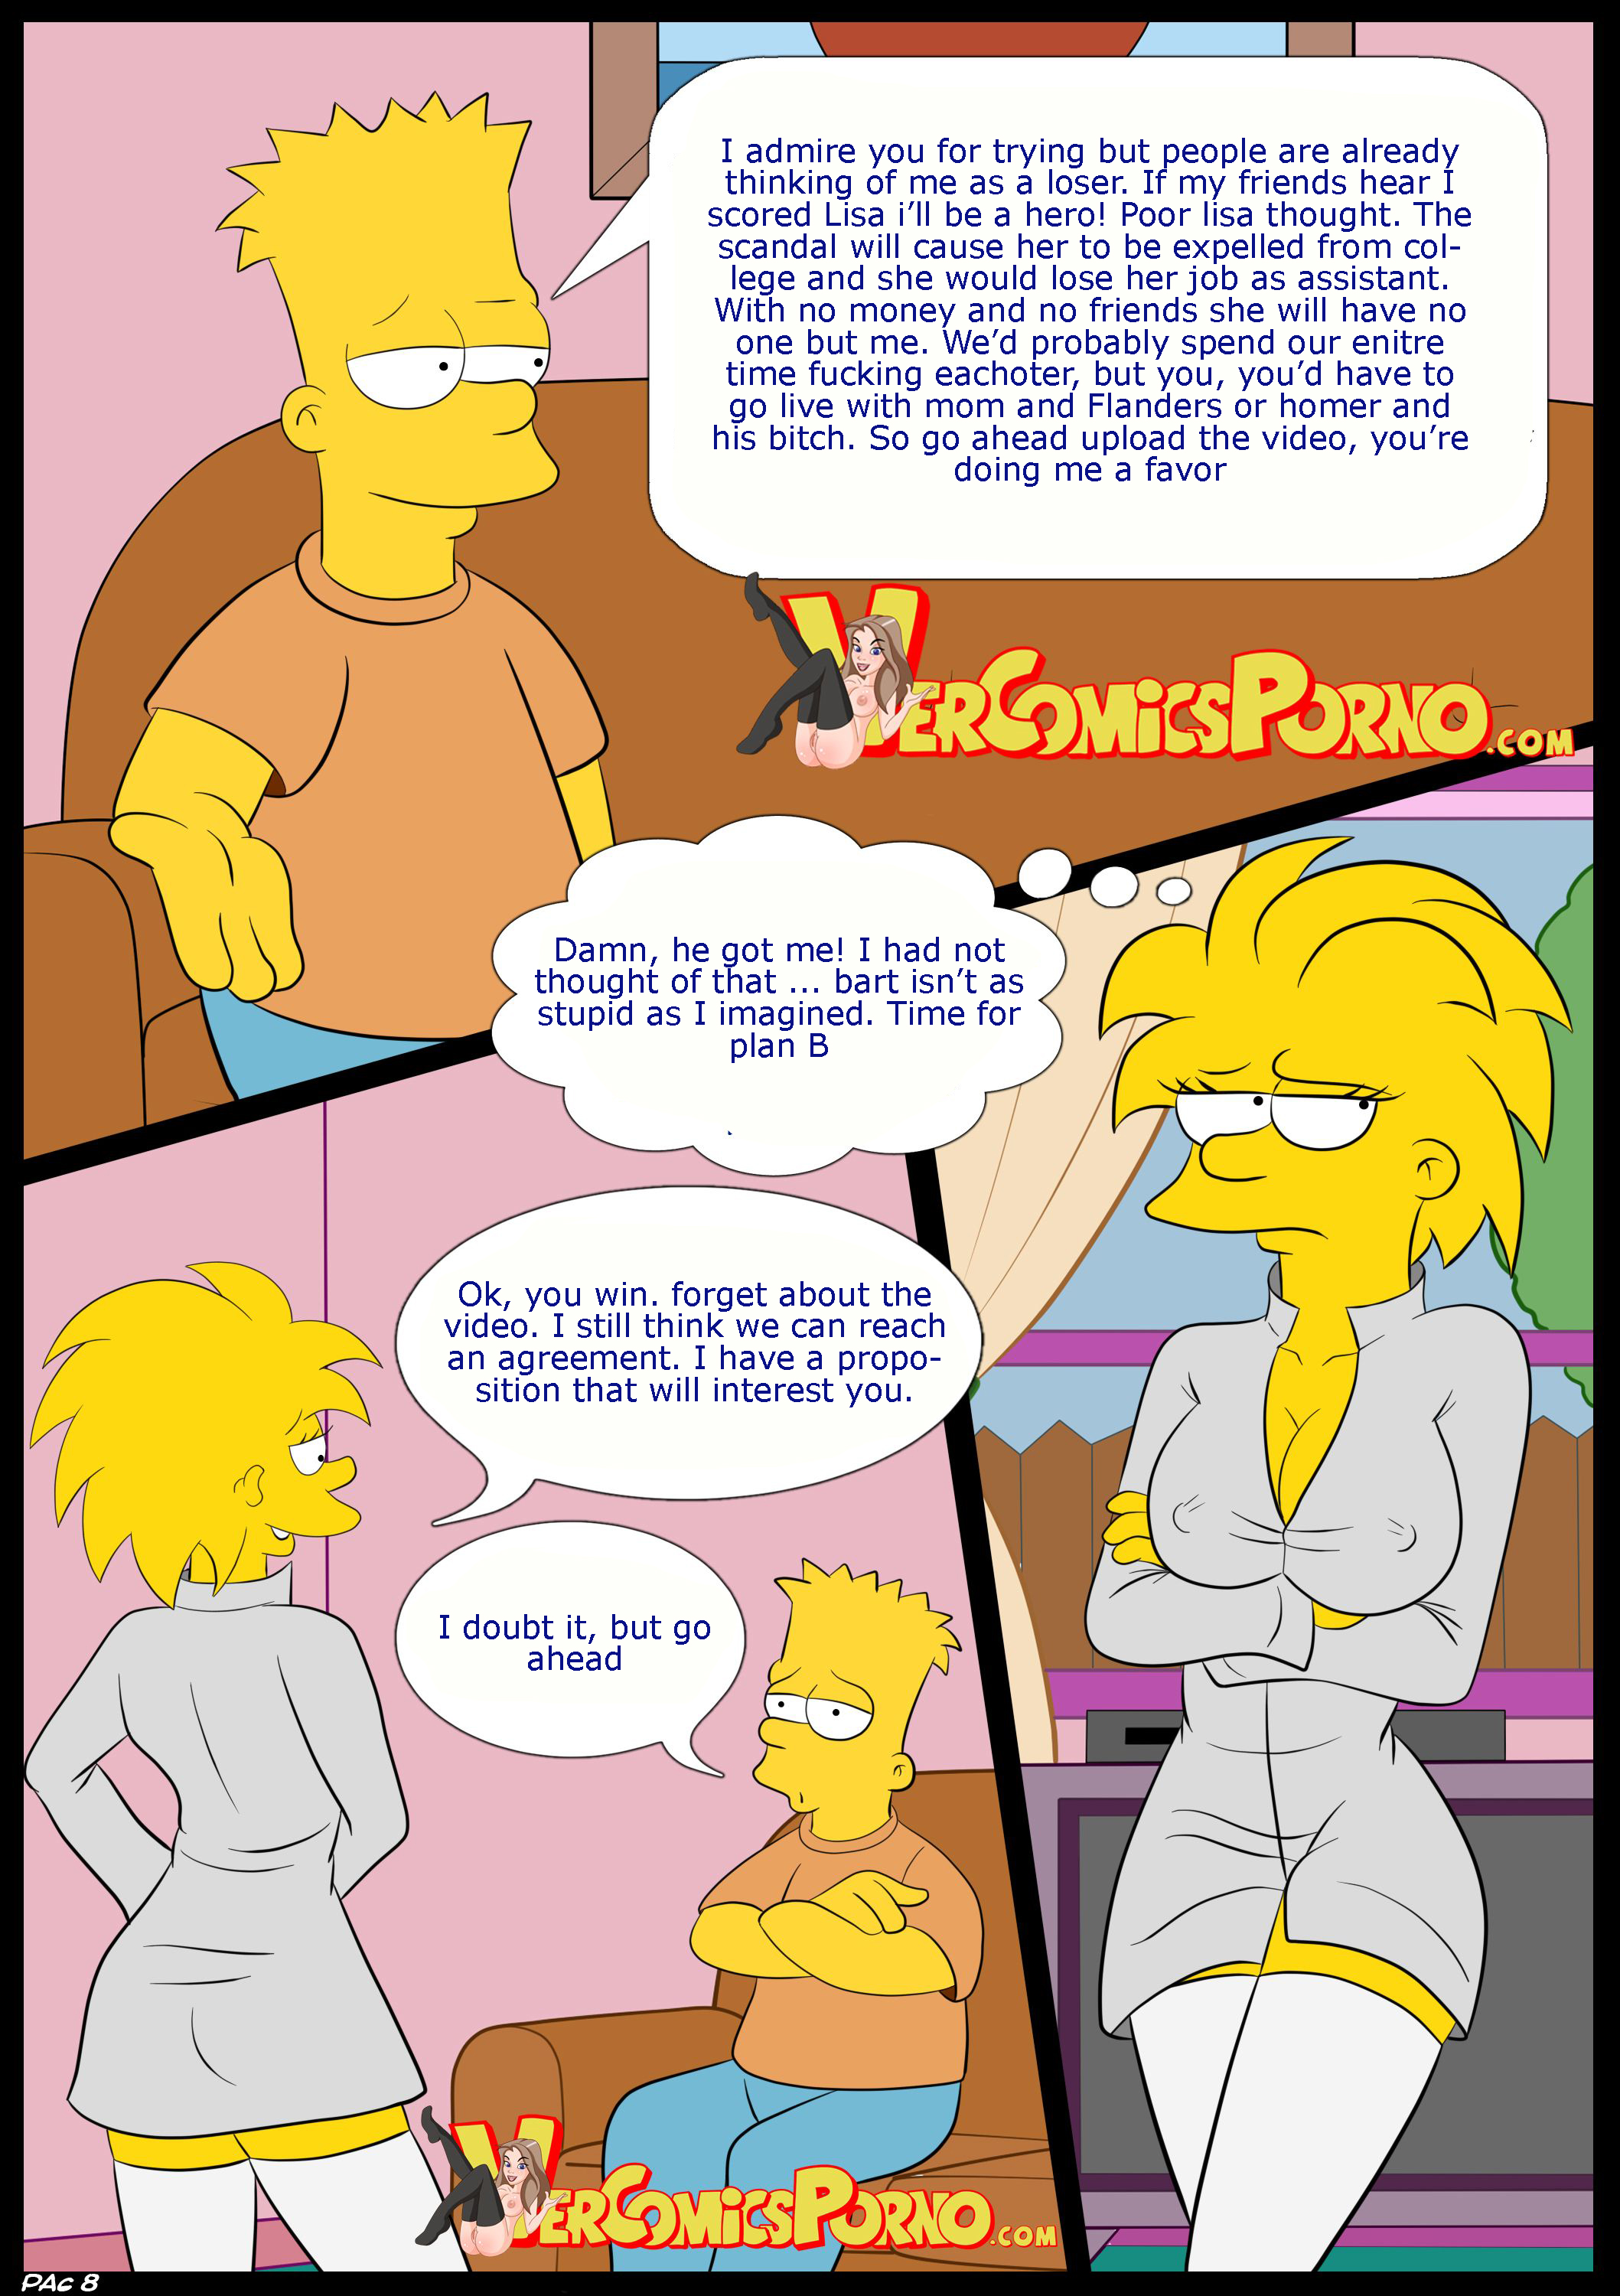 [croc] Los Simpsons Viejas Costumbres 2 La Seduccion The Simpsons [english] Hentai Online